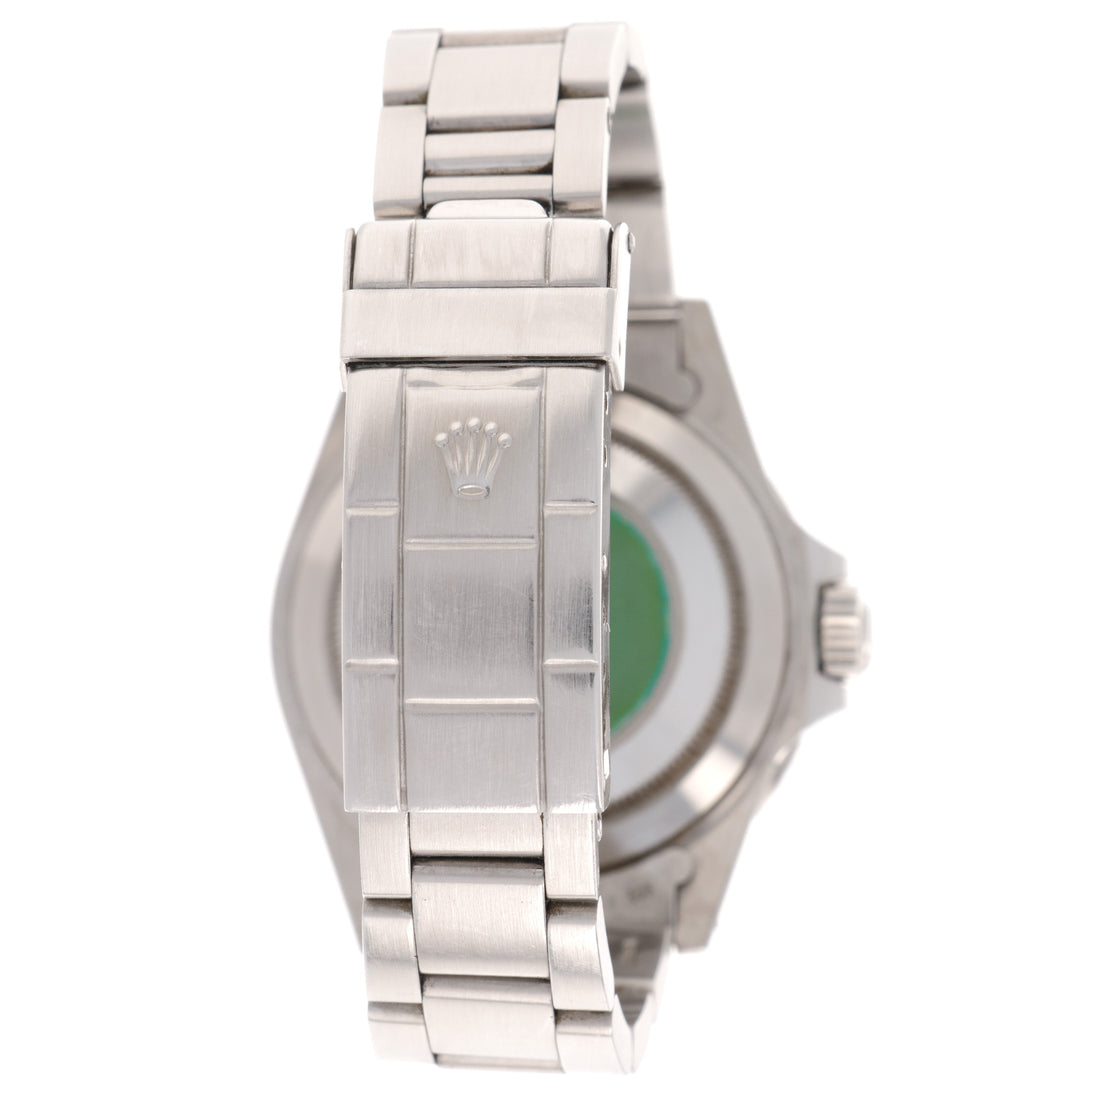 Rolex Submariner Watch Ref. 168000